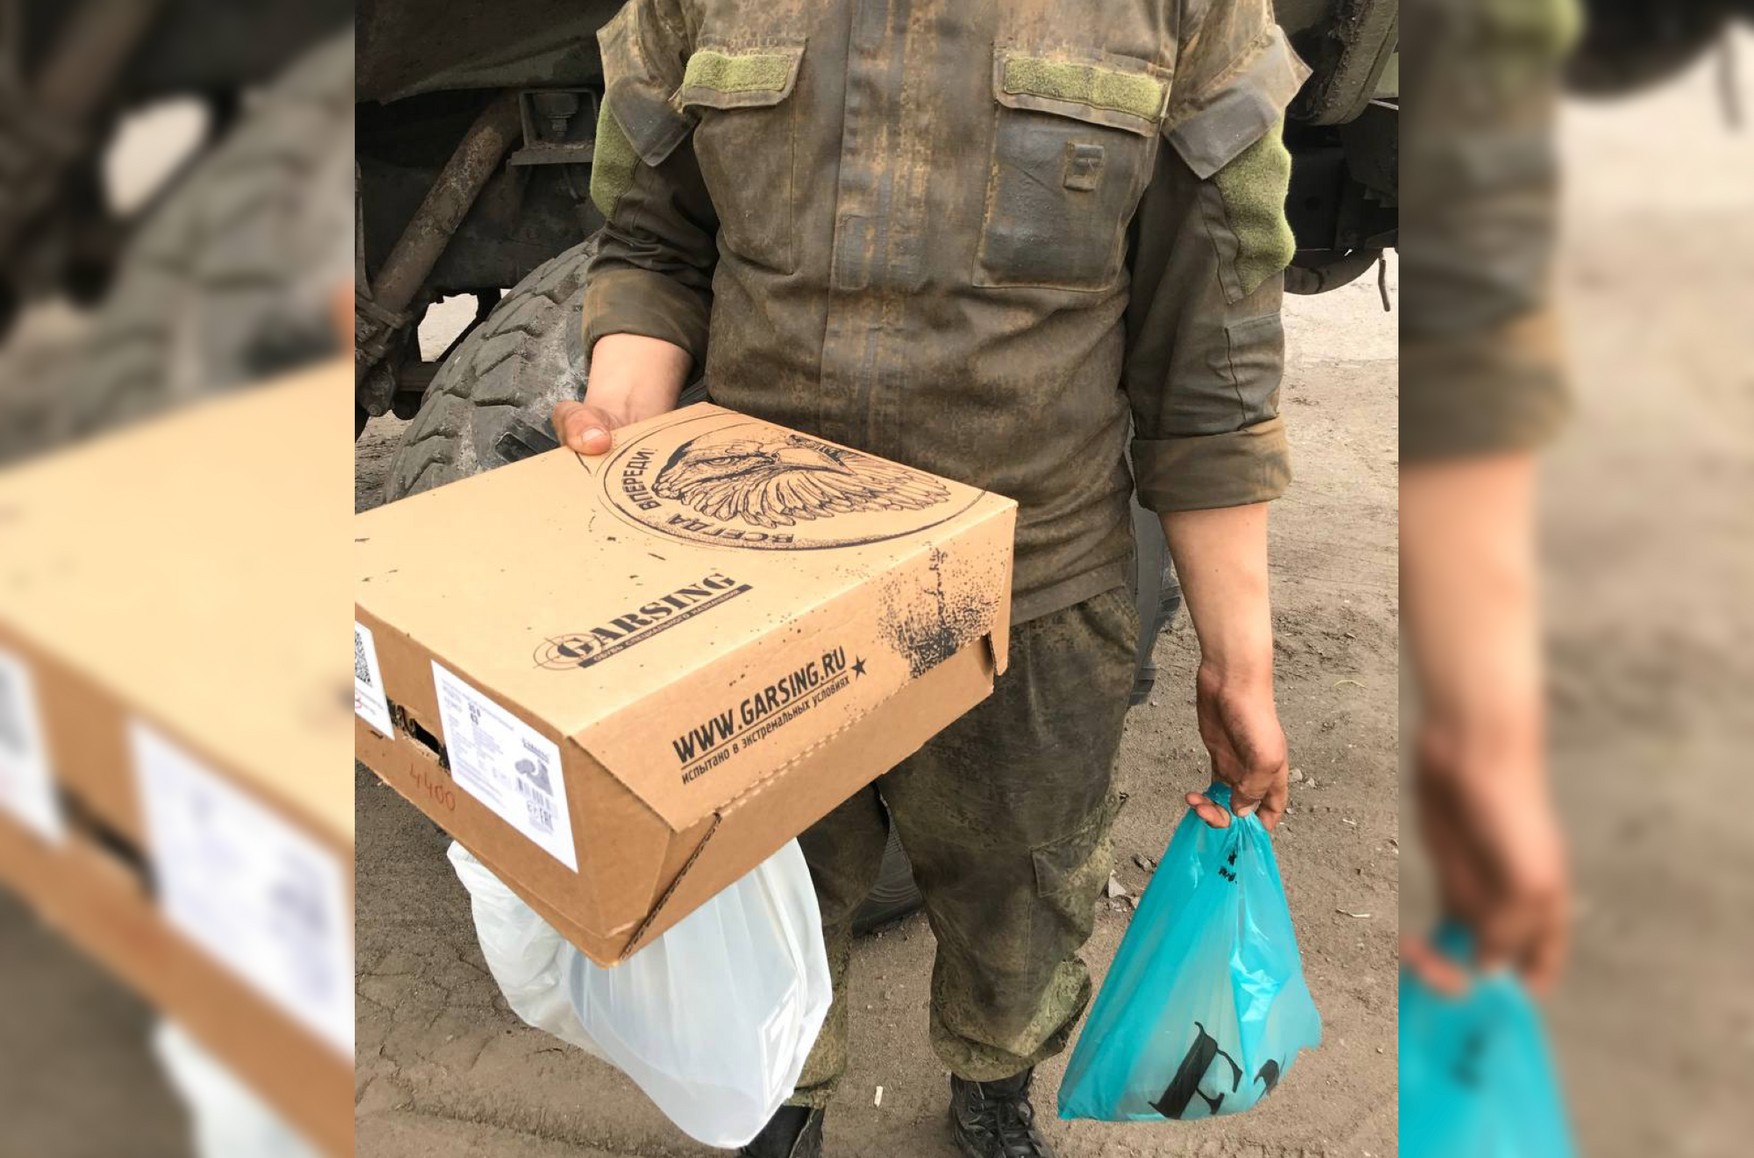 Волонтеры нашли две группы российских срочников на территории Украины. У них нет ни пластырей, ни обуви, ни ремней на автоматы